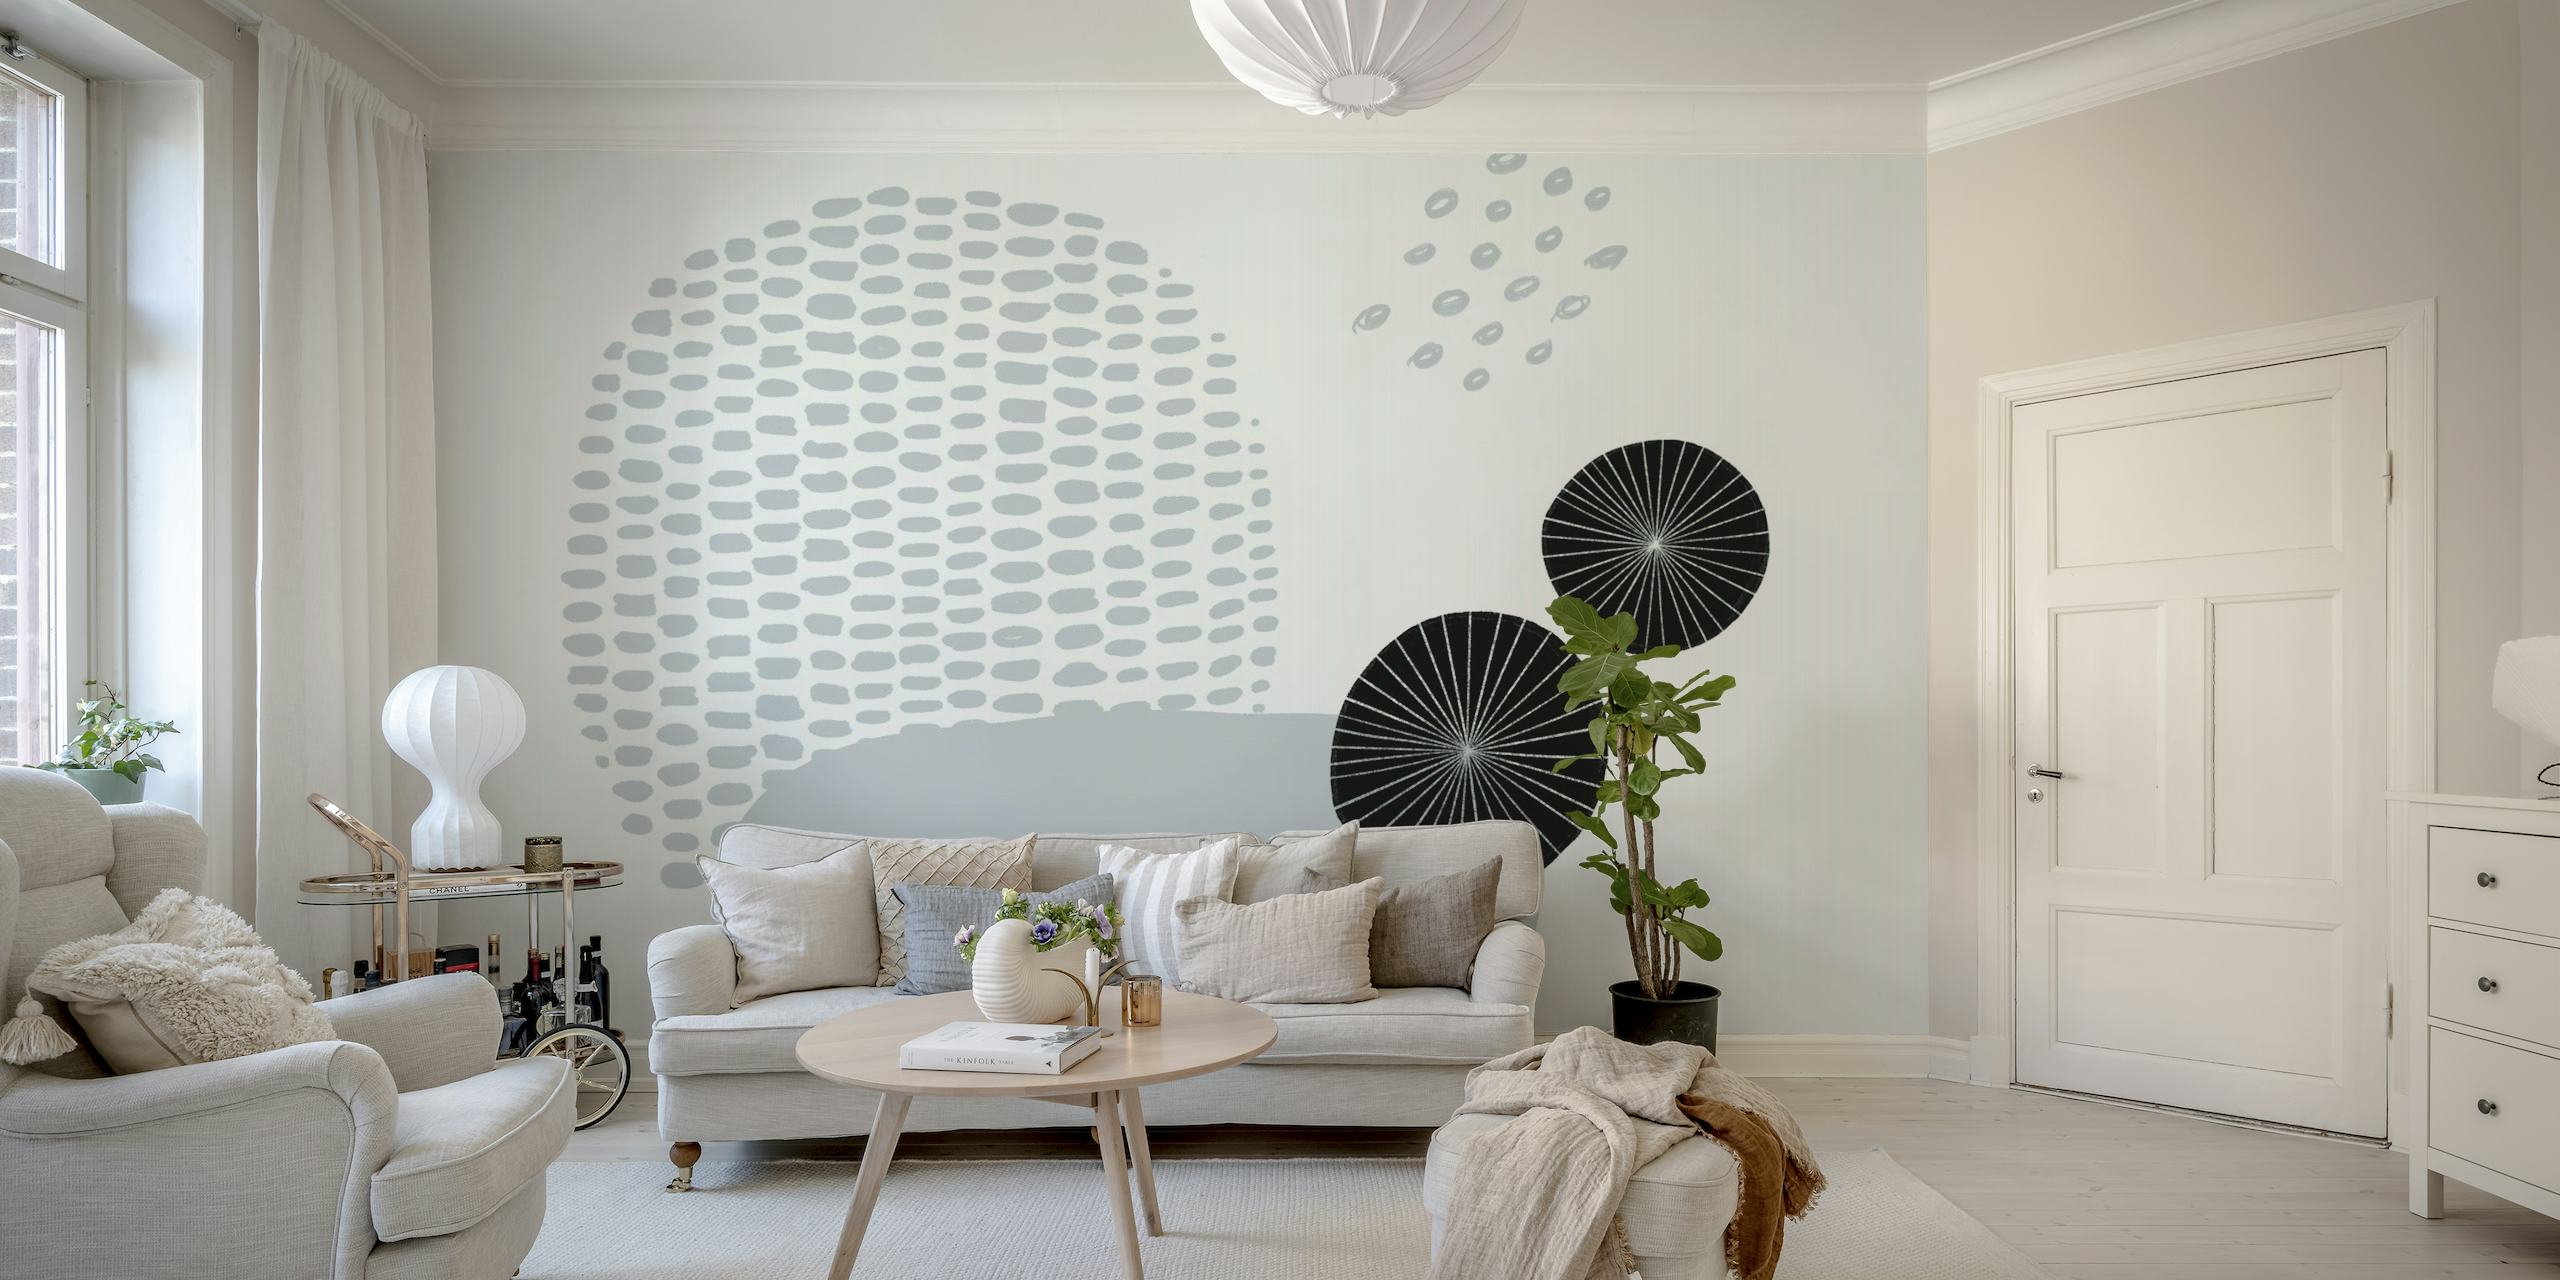 Abstrakti harmaasävyinen seinämaalaus, jossa on pallomaisia muotoja ja pistekuvioita